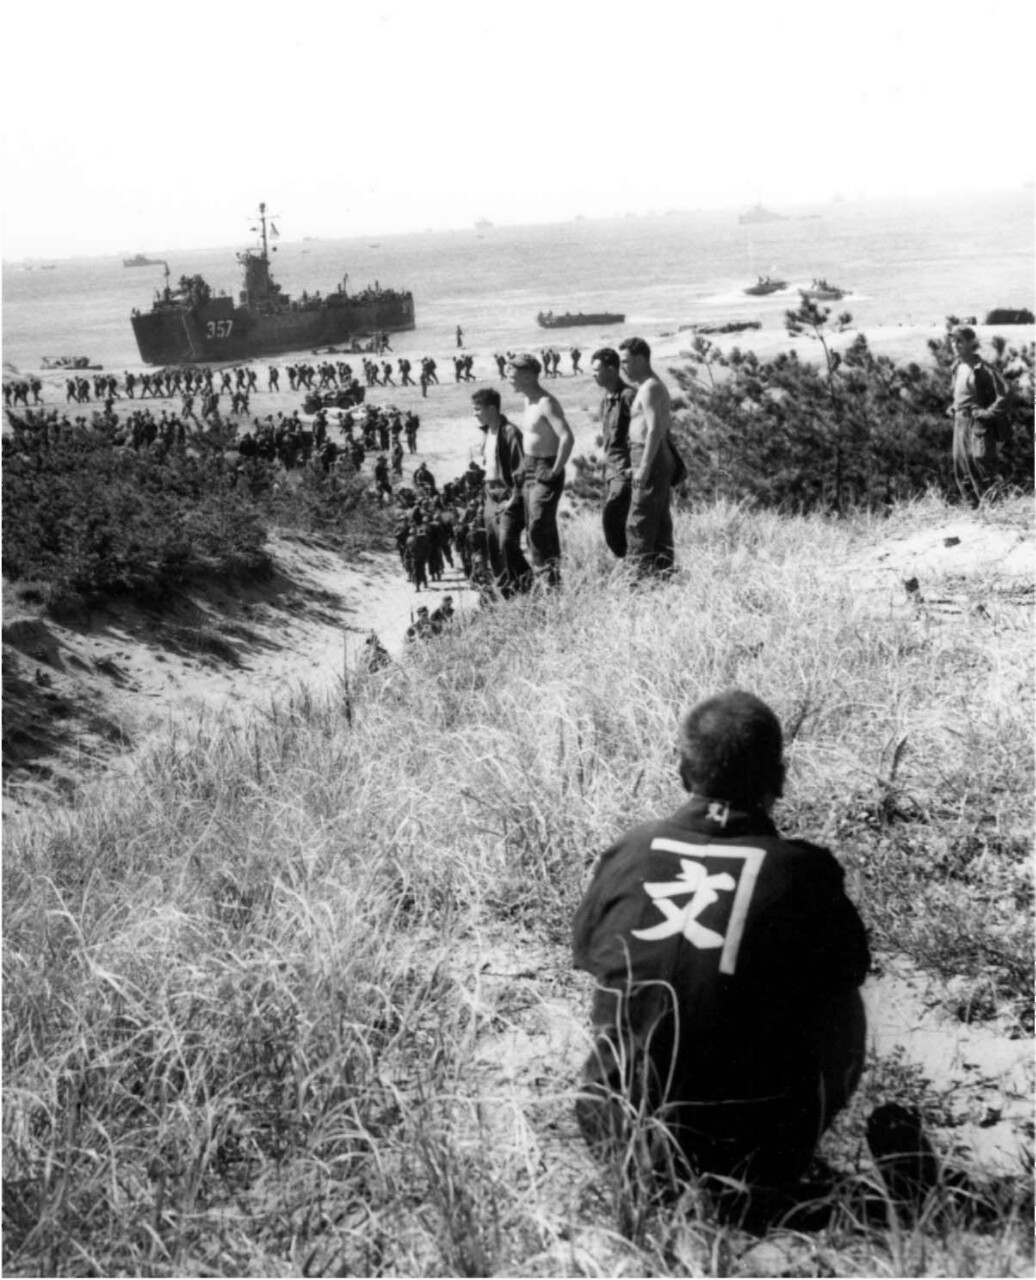 ミツジのブログ終戦直後、上陸してきた進駐軍にささやかな抵抗を試みた日本人